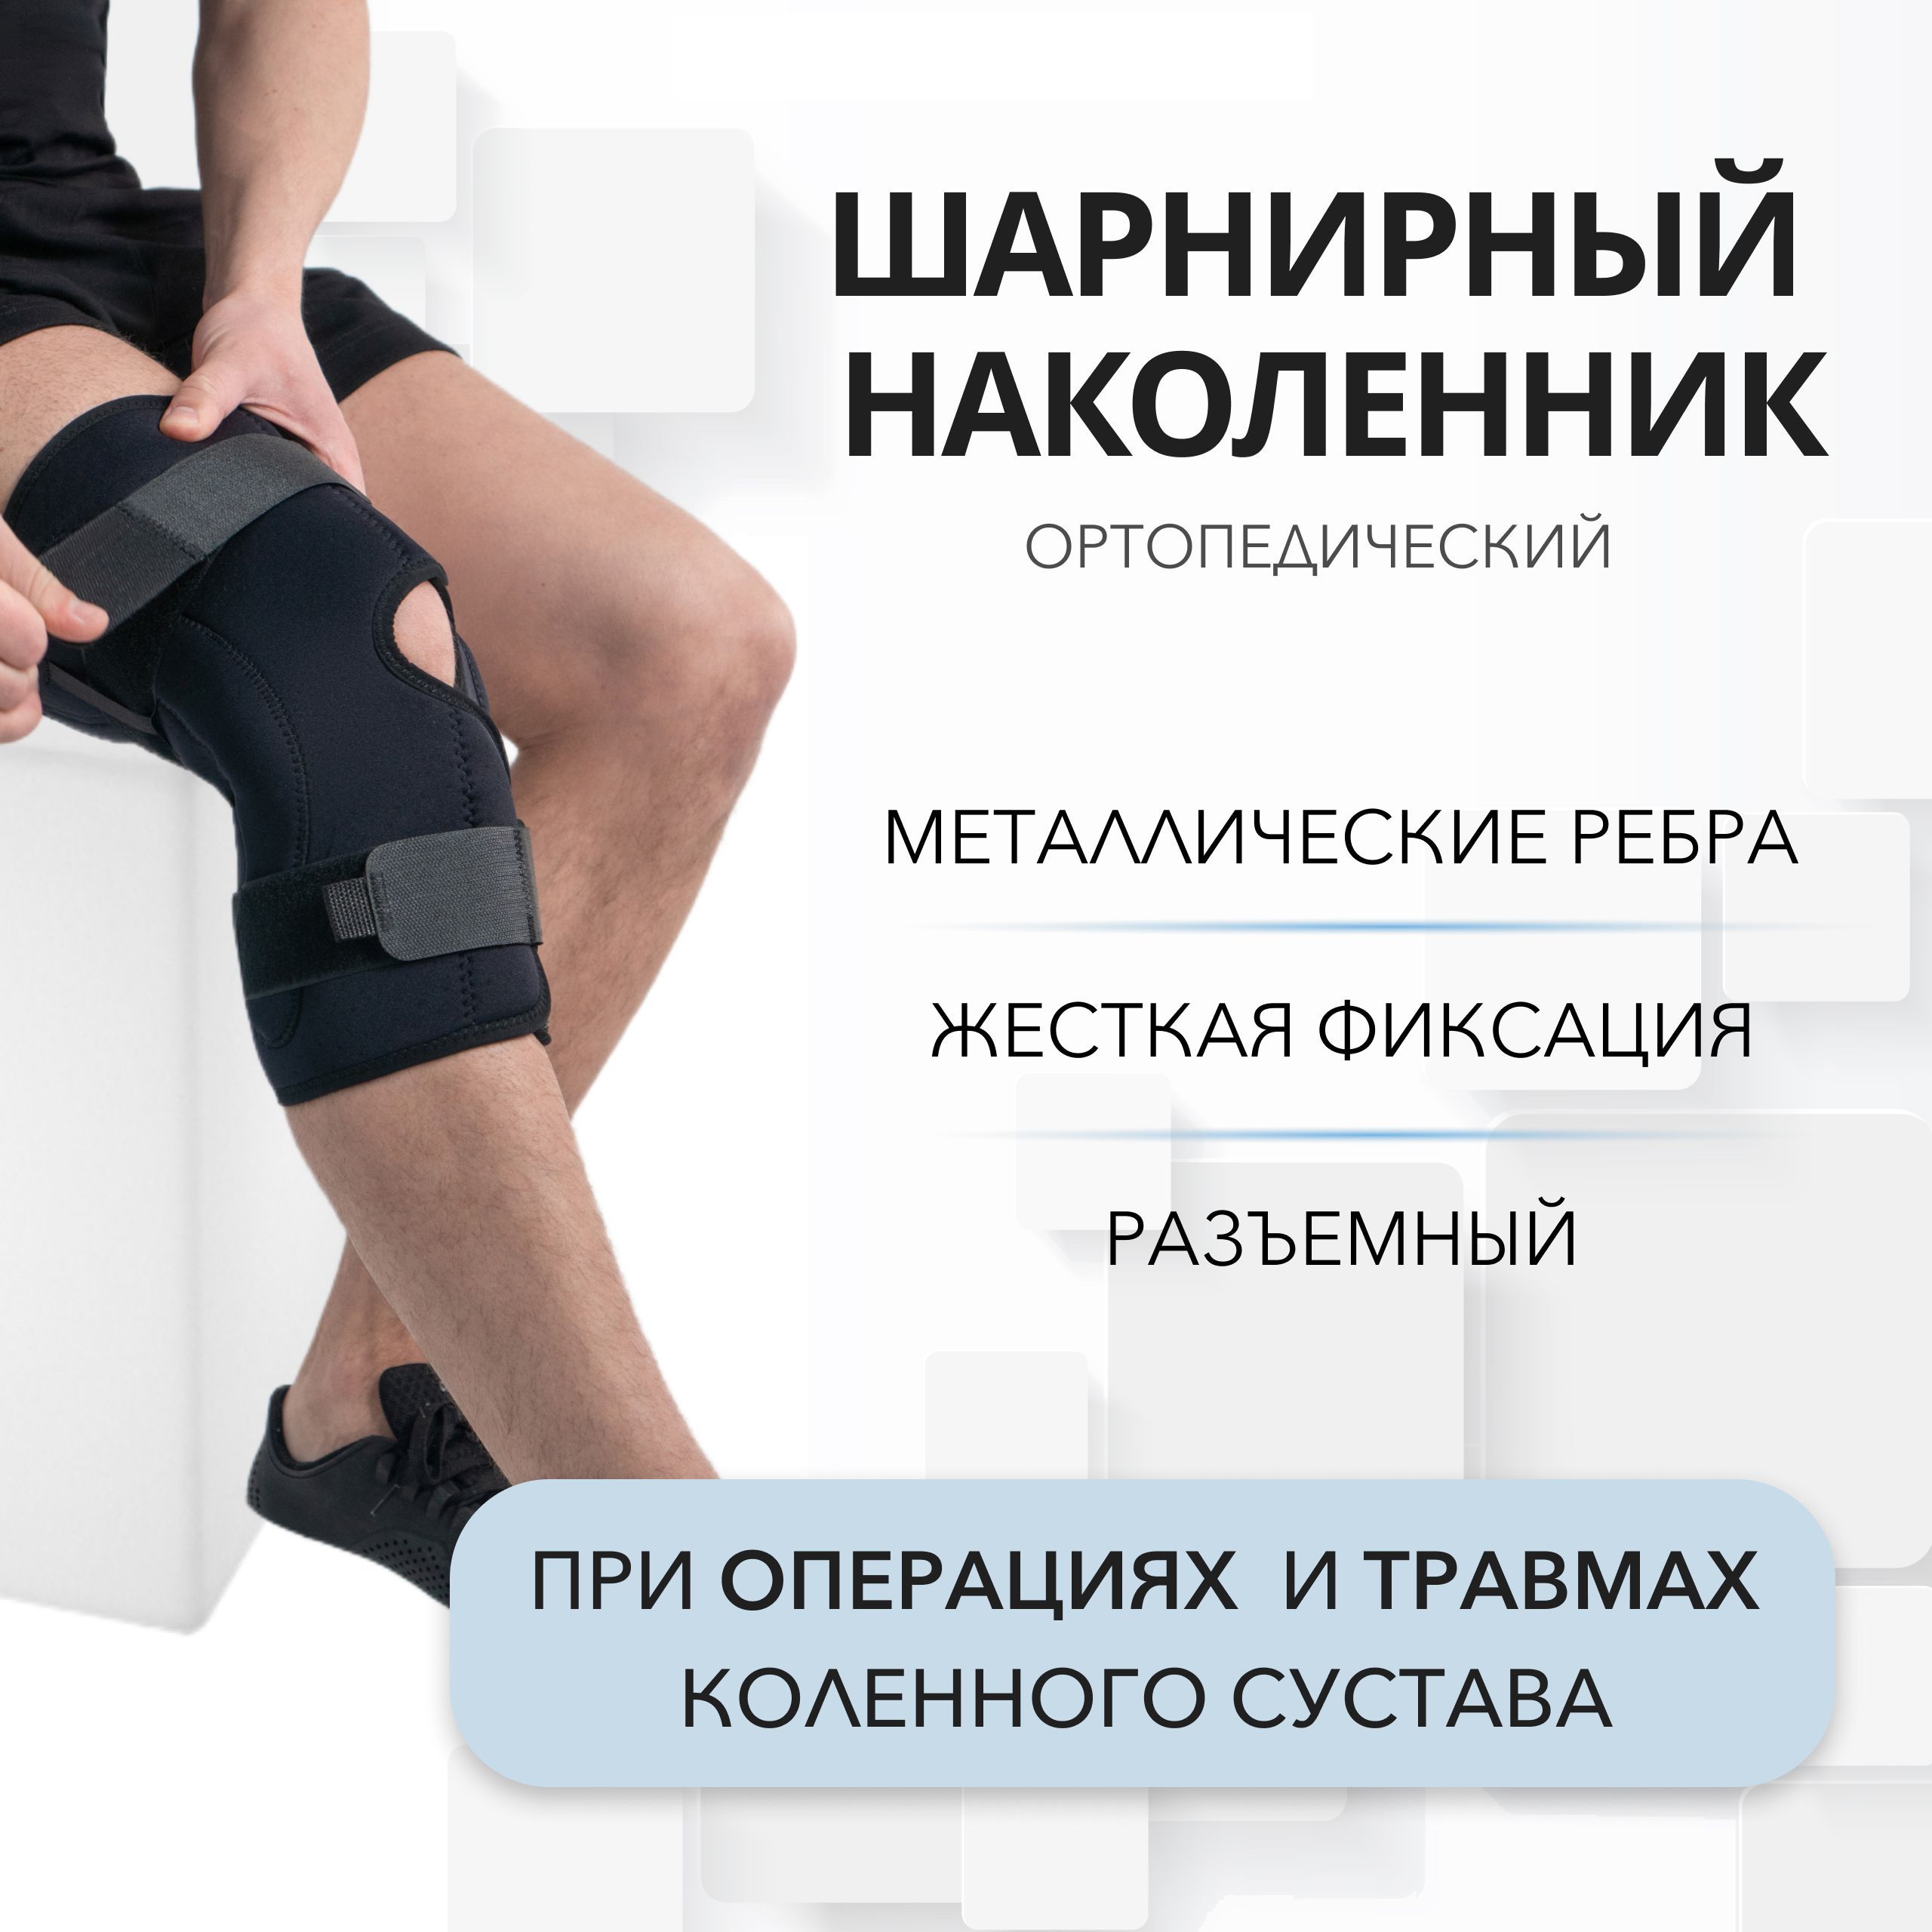 Виды травм коленного сустава и особенности их лечения